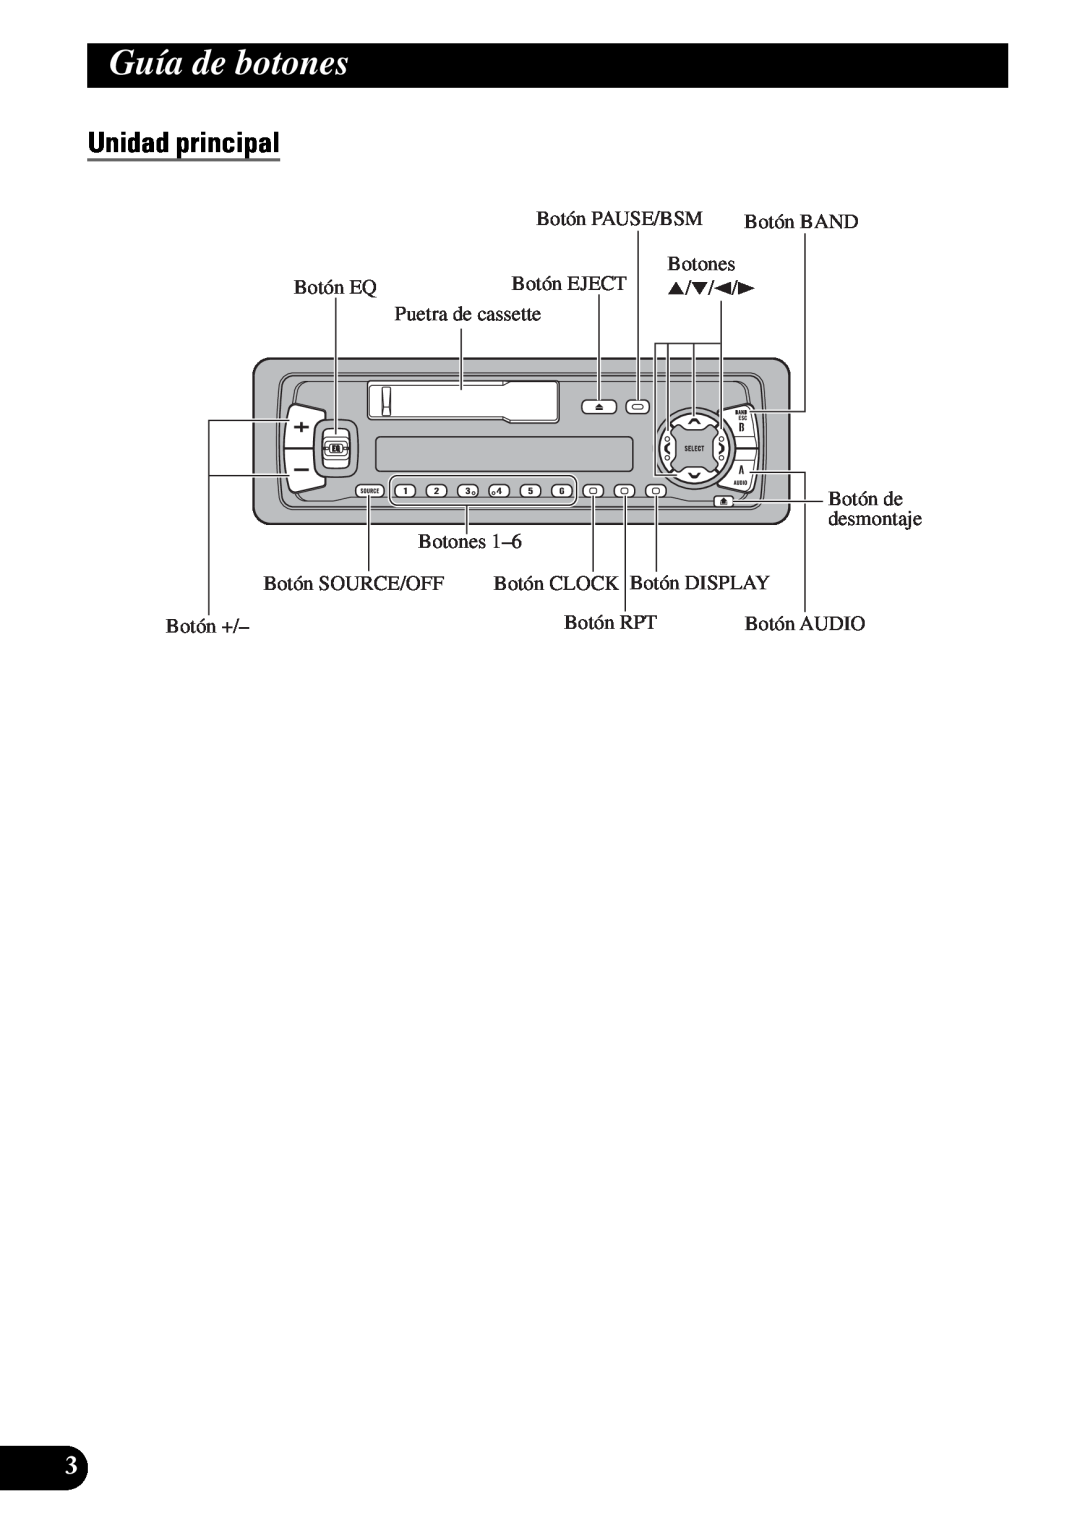 Pioneer KEH-P4950 operation manual Guía de botones, Unidad principal 